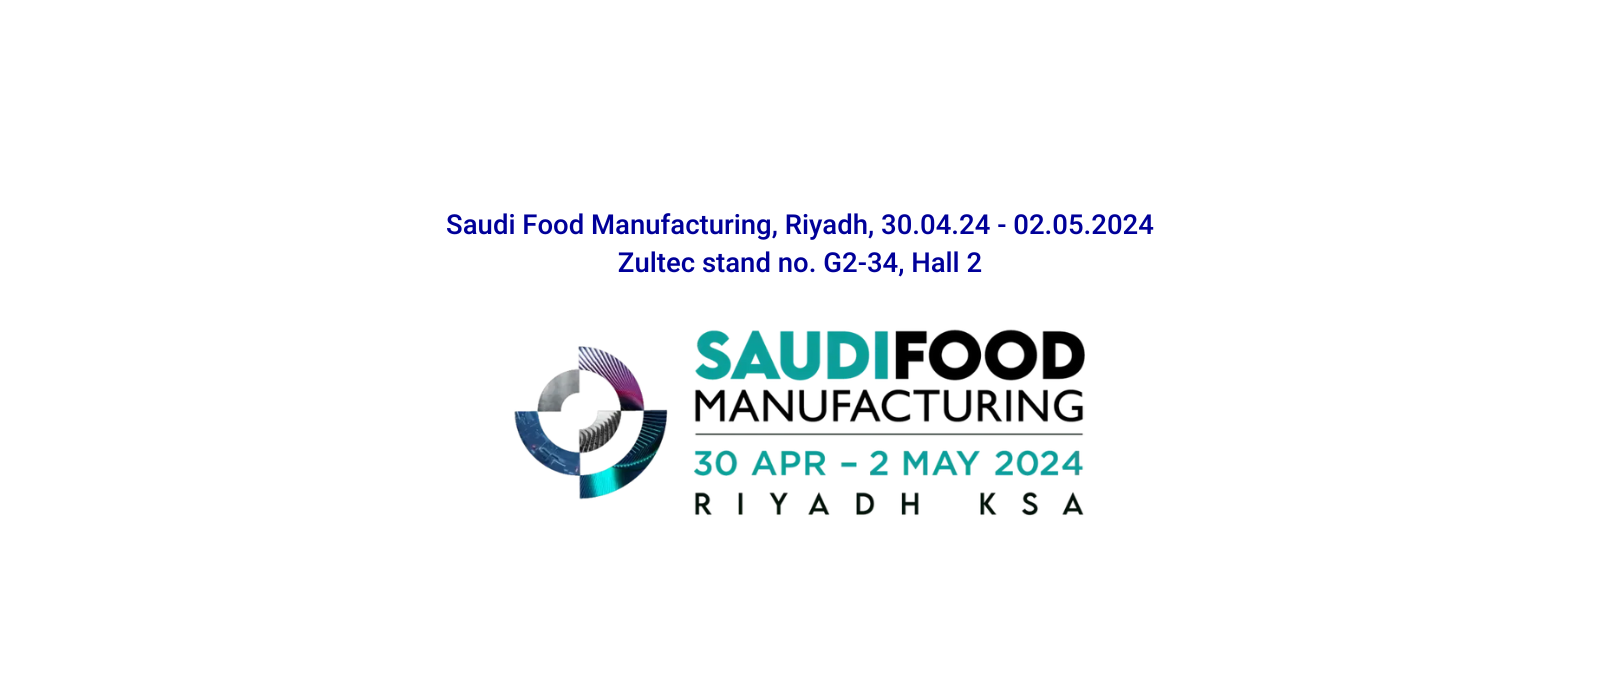 Saudi Food Manufacturing: nouveau rendez-vous pour Fabbri Group